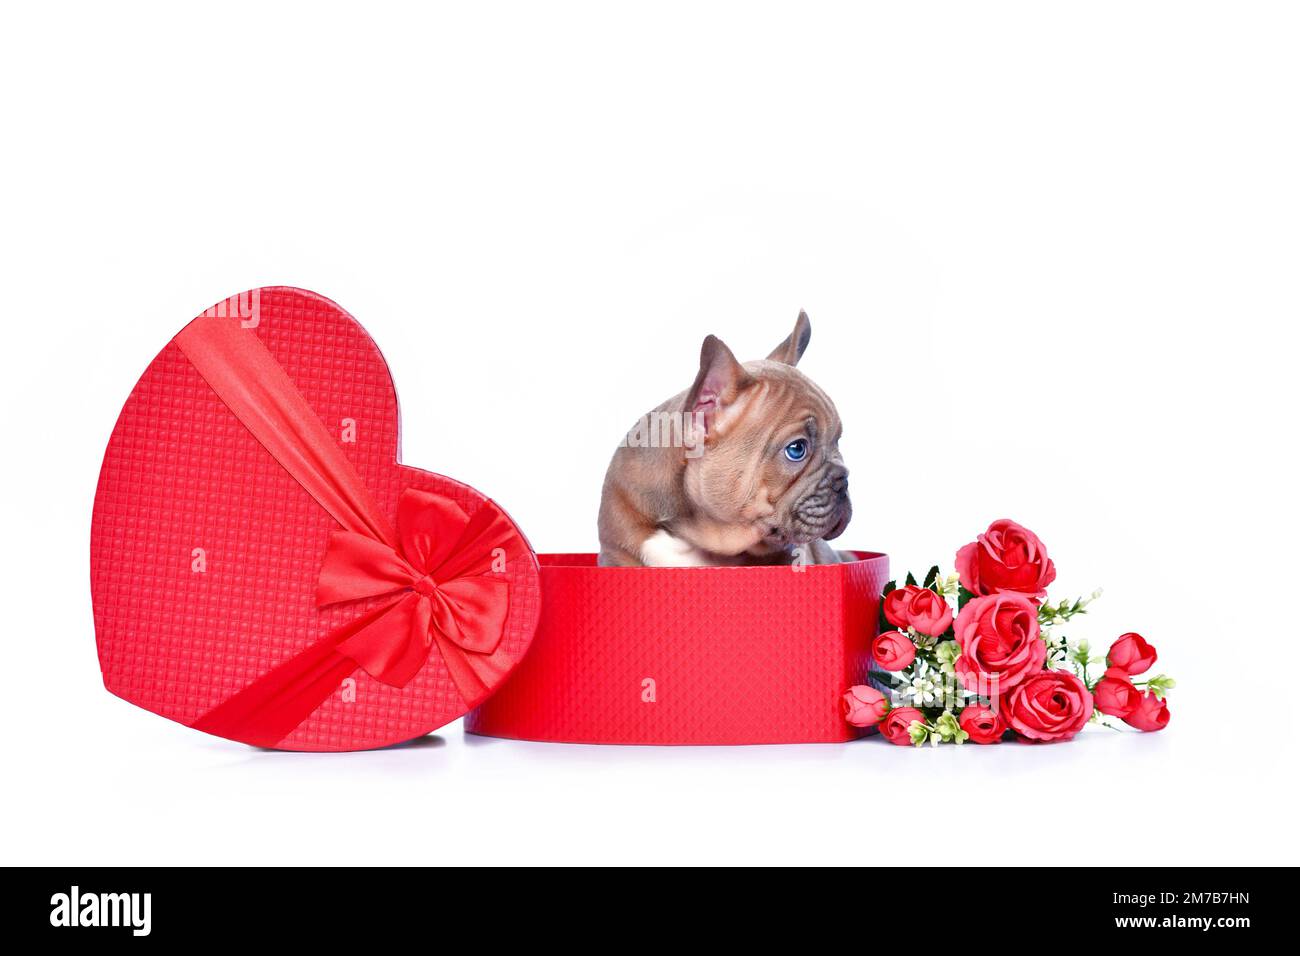 Adorable chien Bulldog français chiot en boîte cadeau de la Saint-Valentin en forme de coeur rouge avec roses sur fond blanc Banque D'Images